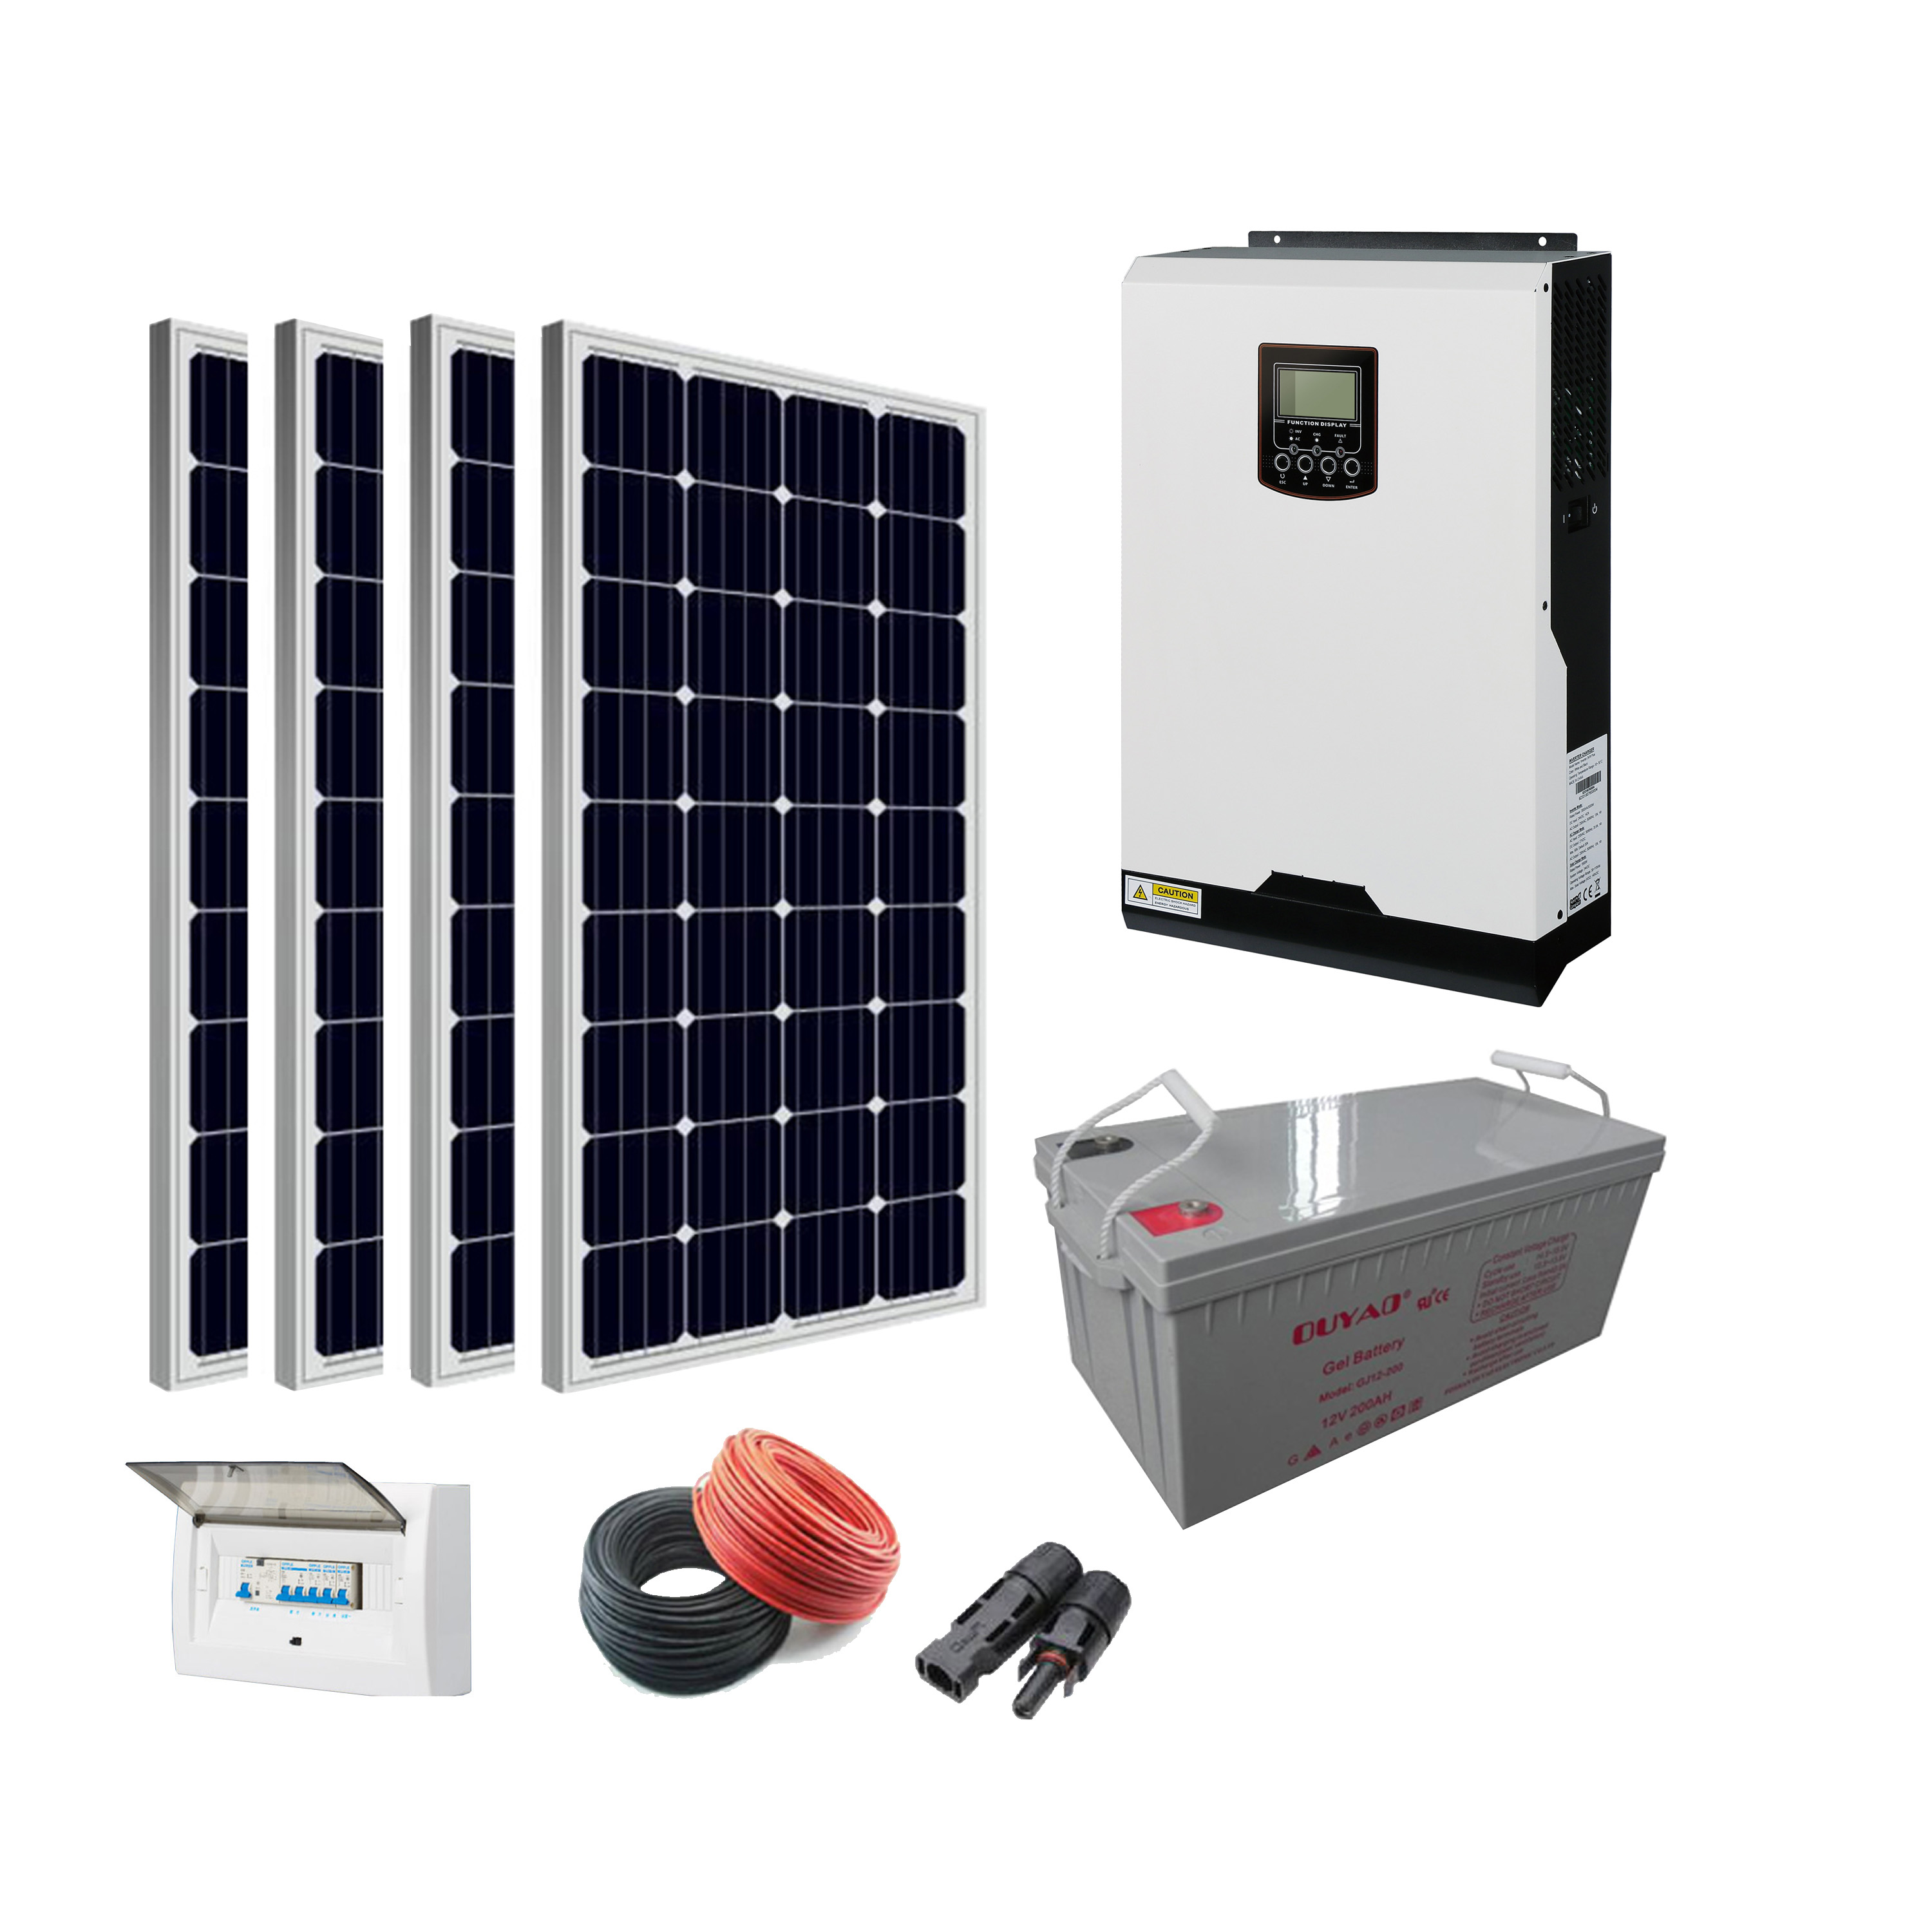 22KVA off grid solar power system